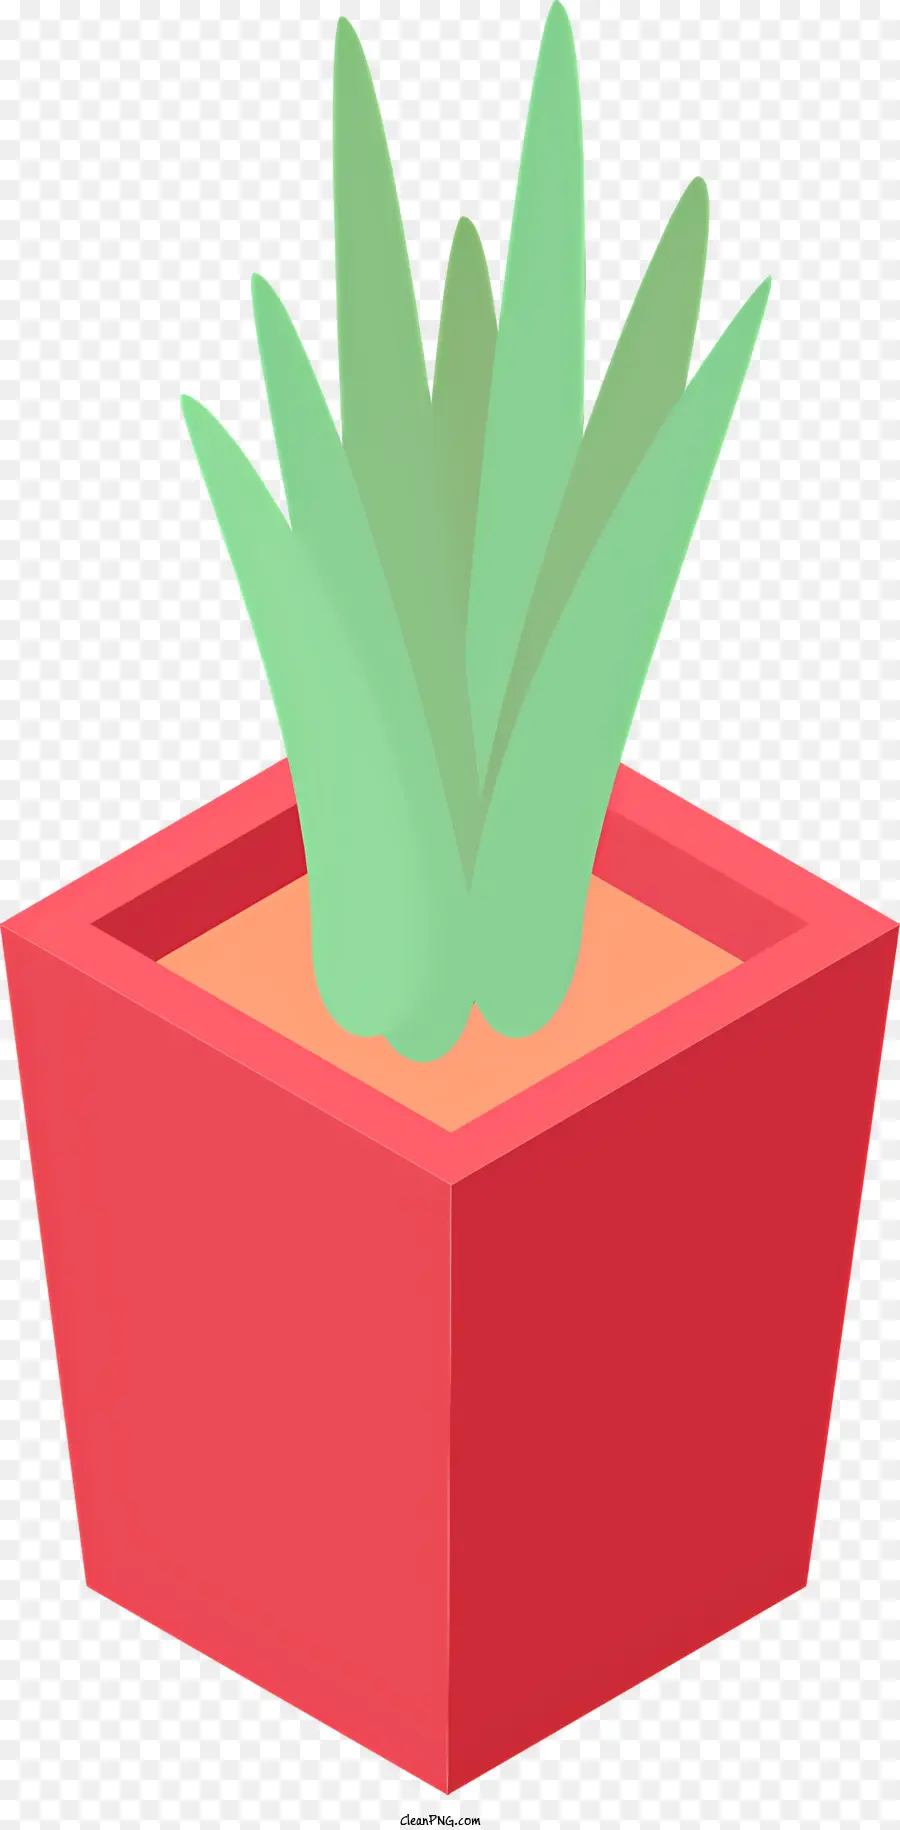 Icon Red Pot Green Pflanze Schwarze Hintergrund runde Basis - Roter Topf mit grüner Pflanze auf schwarzem Hintergrund